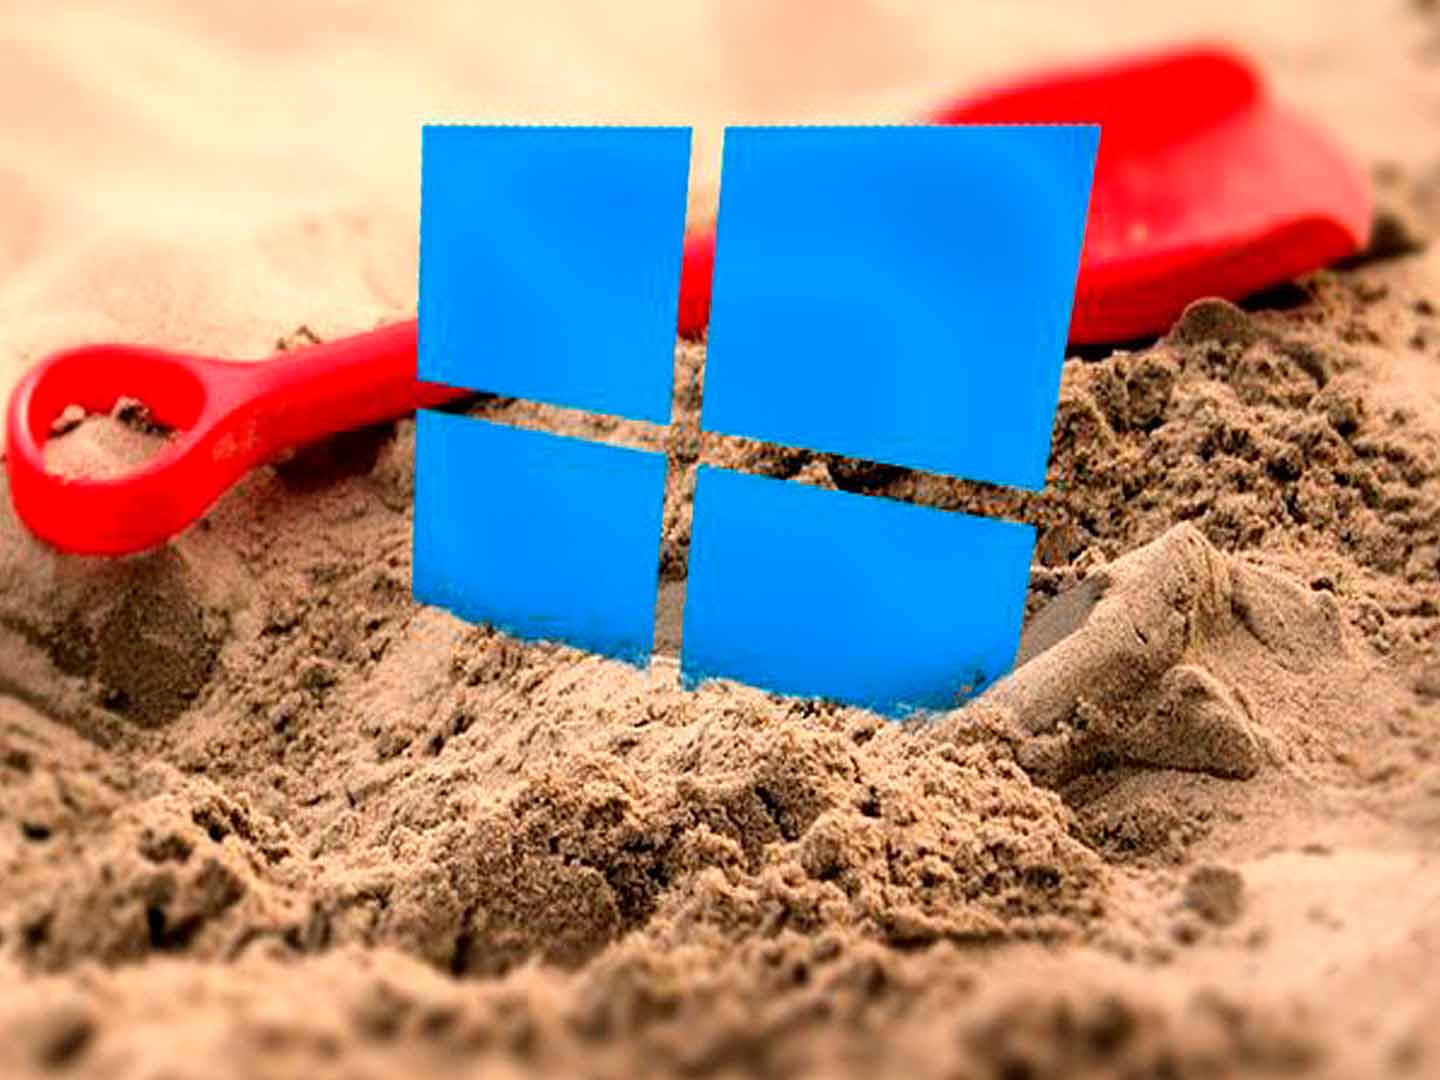 Windows Sandbox llegará a principios de 2019 para ejecutar apps de forma segura y aislada